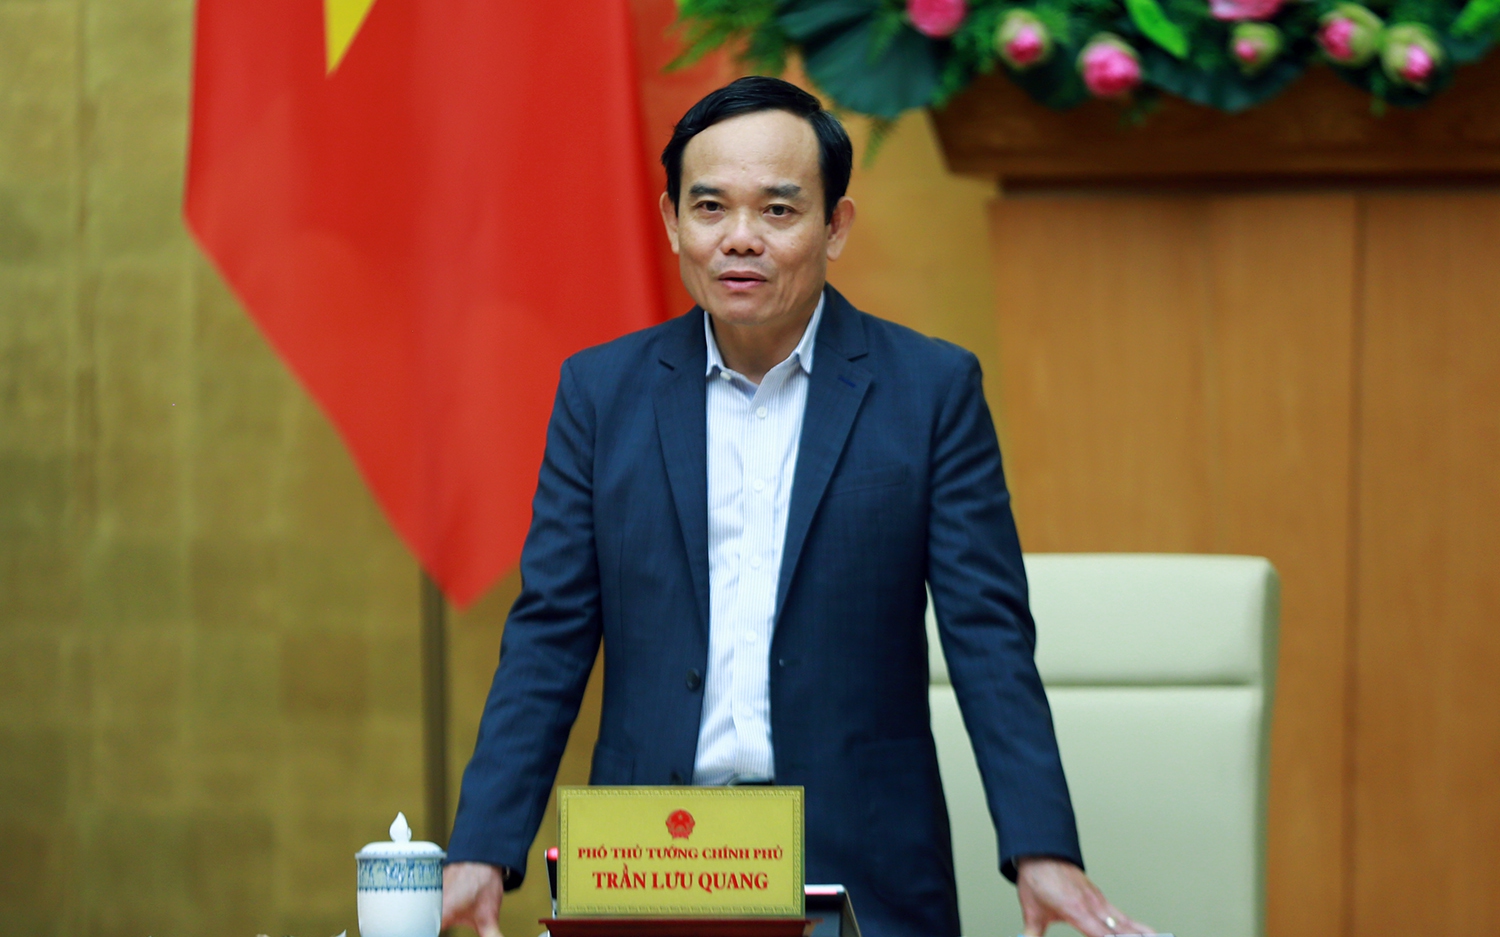 Phó Thủ tướng Trần Lưu Quang: Không chủ quan trong đảm bảo an ninh, an toàn hàng không